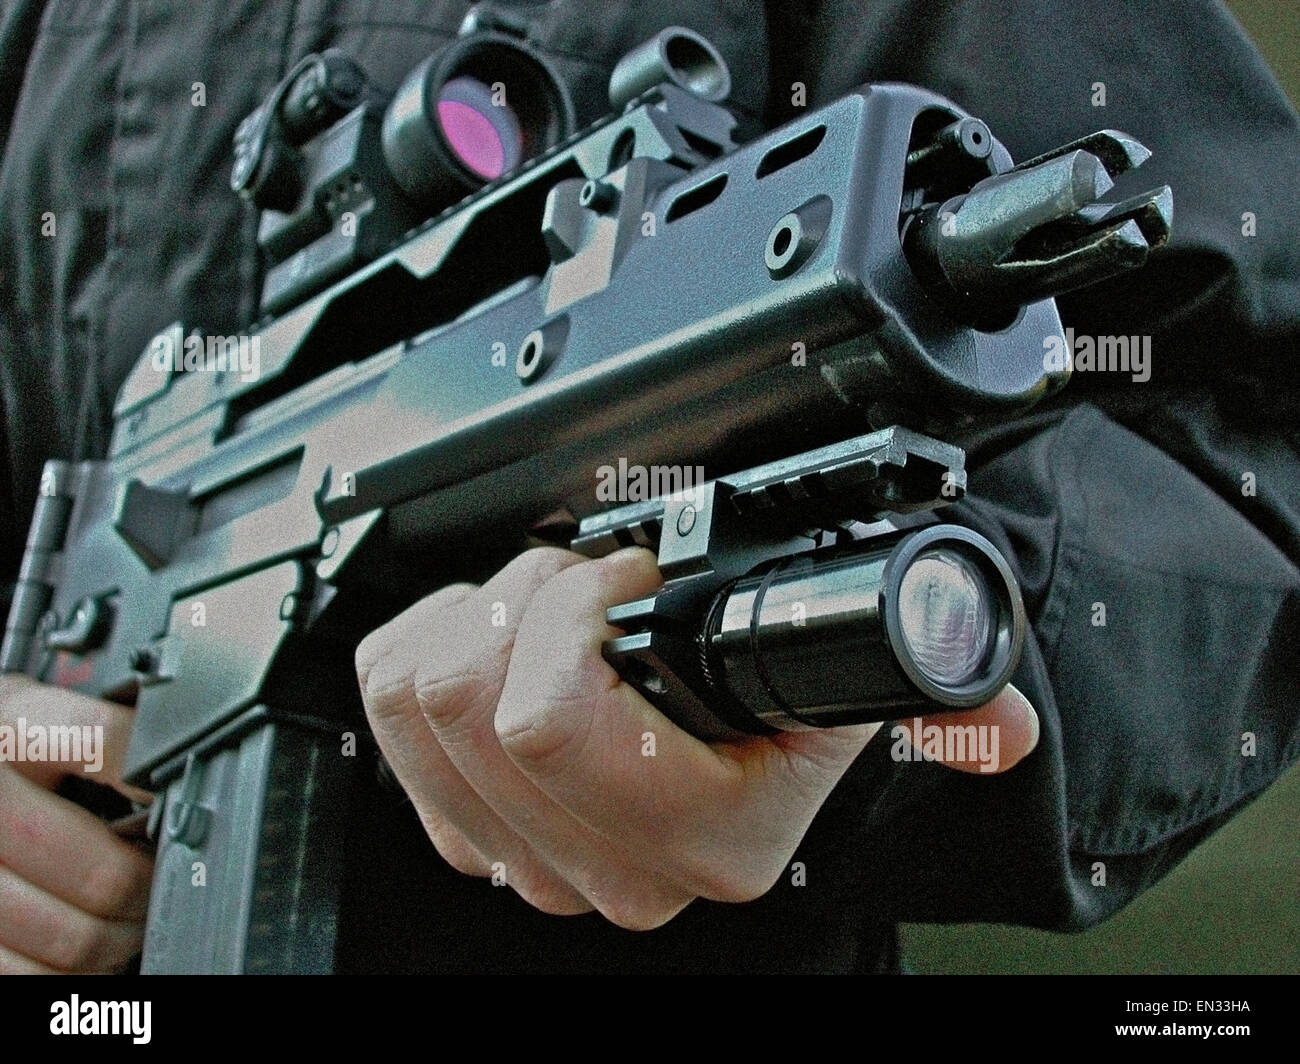 Un Heckler & Koch G36 C (5,56 mm x 45 calibre OTAN fusil d'assaut au gaz) favorisée par la la loi (Police). Il a les dimensions d'une mitraillette combiné avec la capacité de pénétration du calibre 5,56 OTAN. Banque D'Images